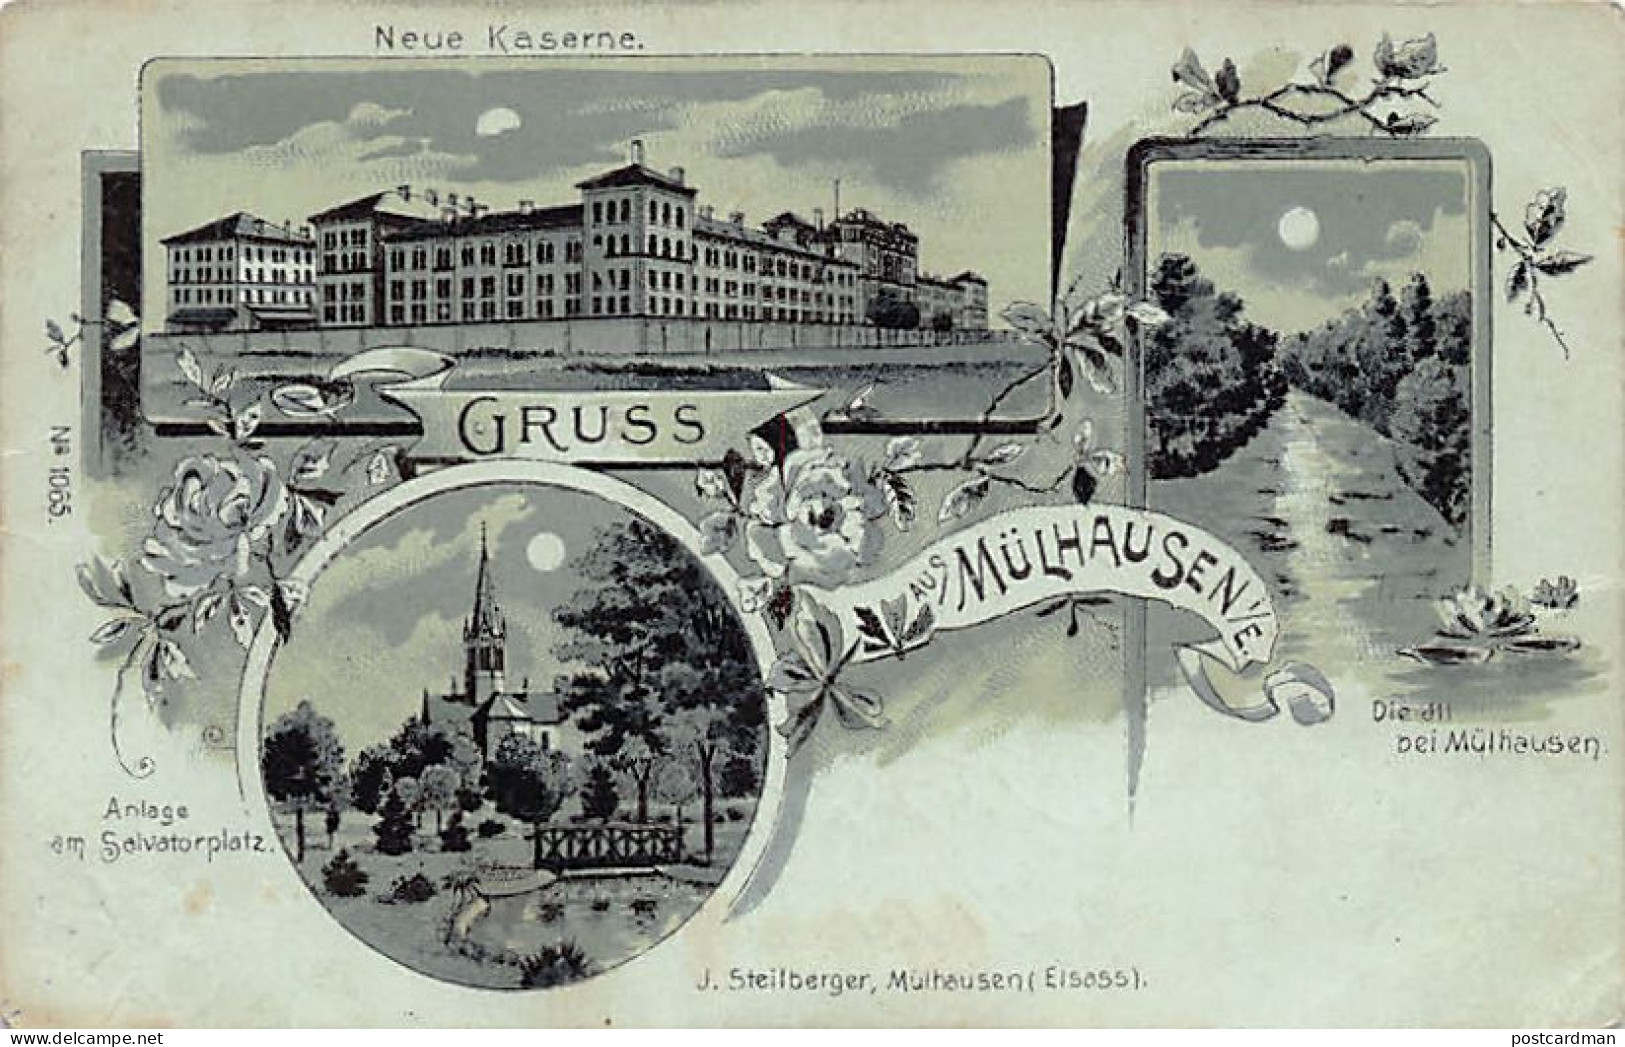 MULHOUSE - Carte à La Lune - La Nouvelle Caserne (Neue Kaserne) -l'Ill - Place Salvator - J. Steilberger - Mulhouse